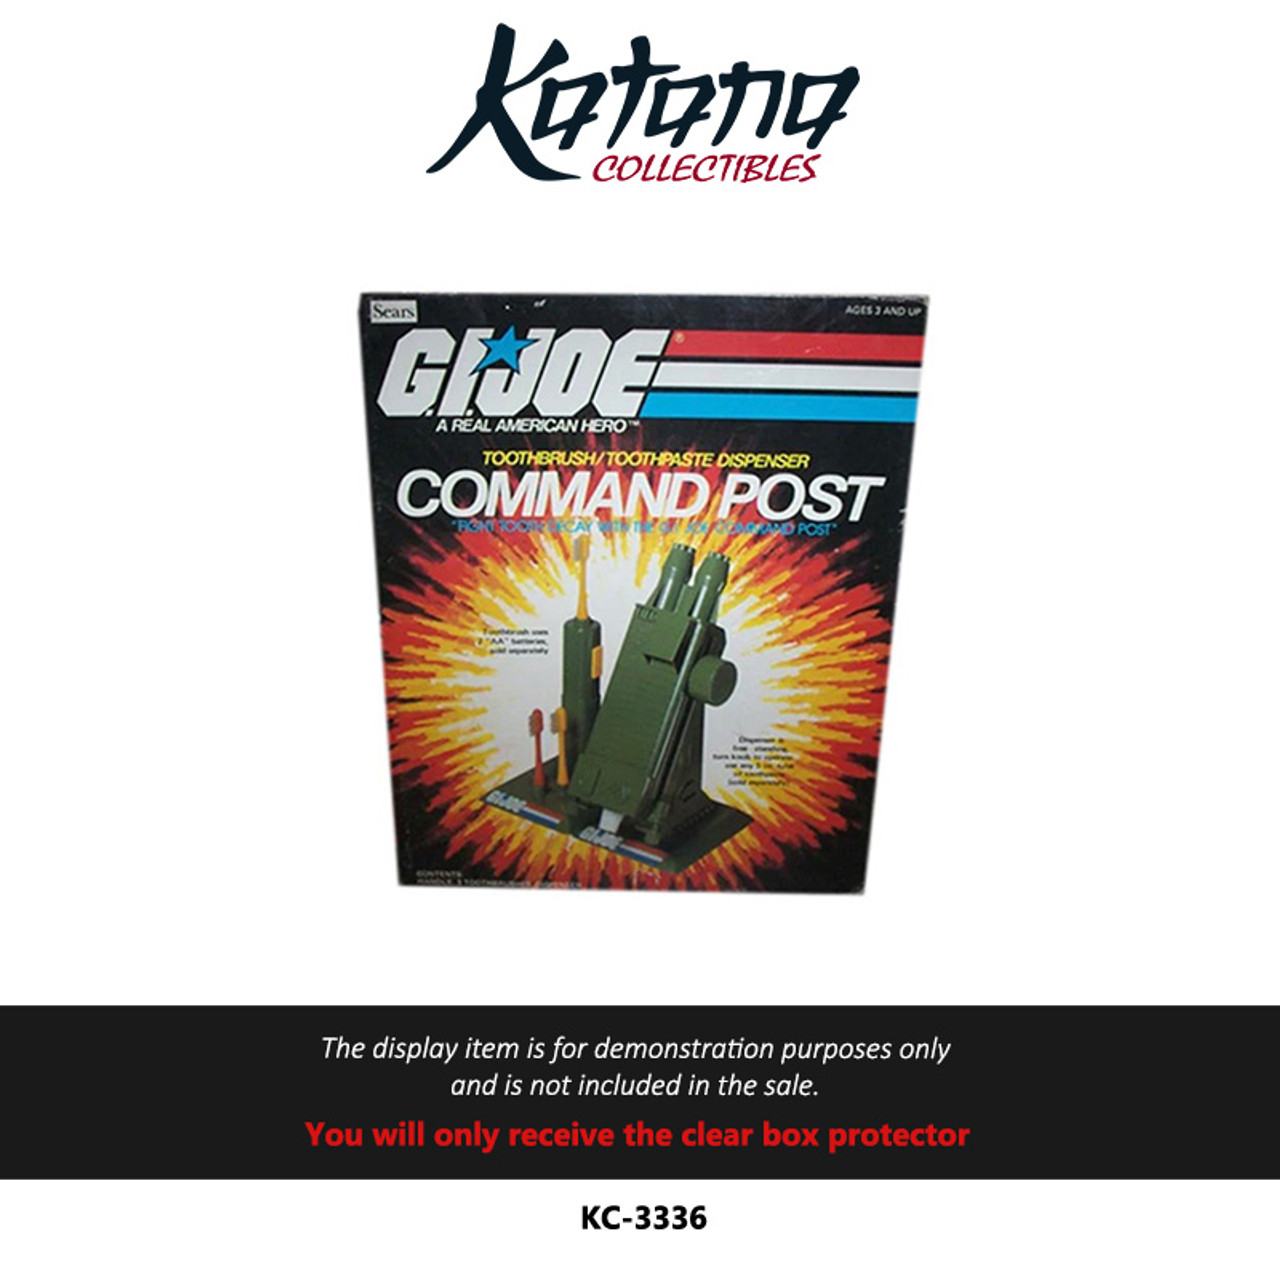 Katana Collectibles Protector For G.I. Joe Command Post Toothbrush